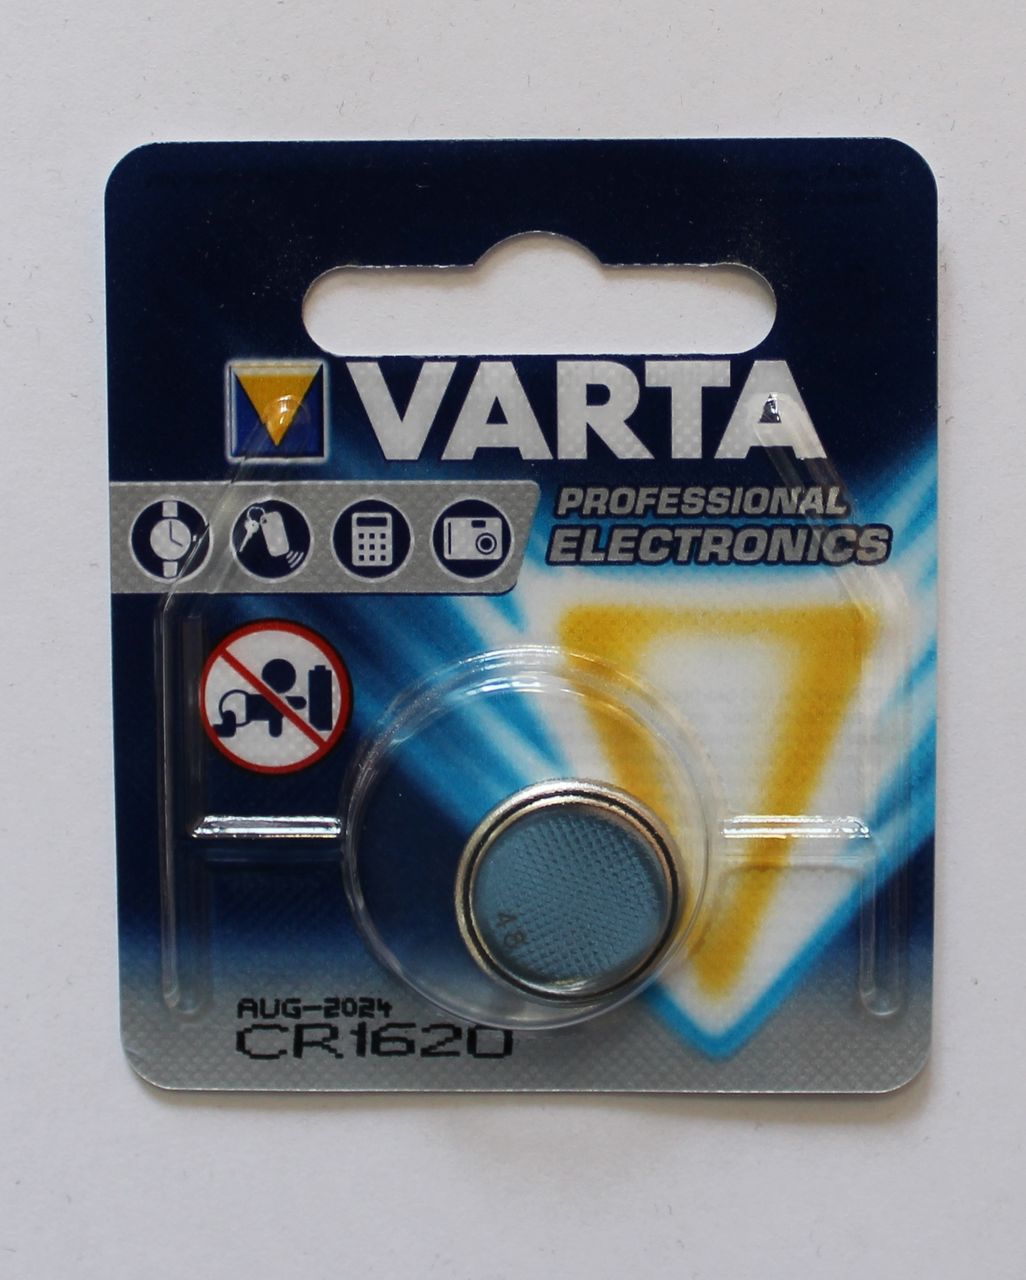 VARTA CR1620 1 BL PROFESSIONAL (10) 32